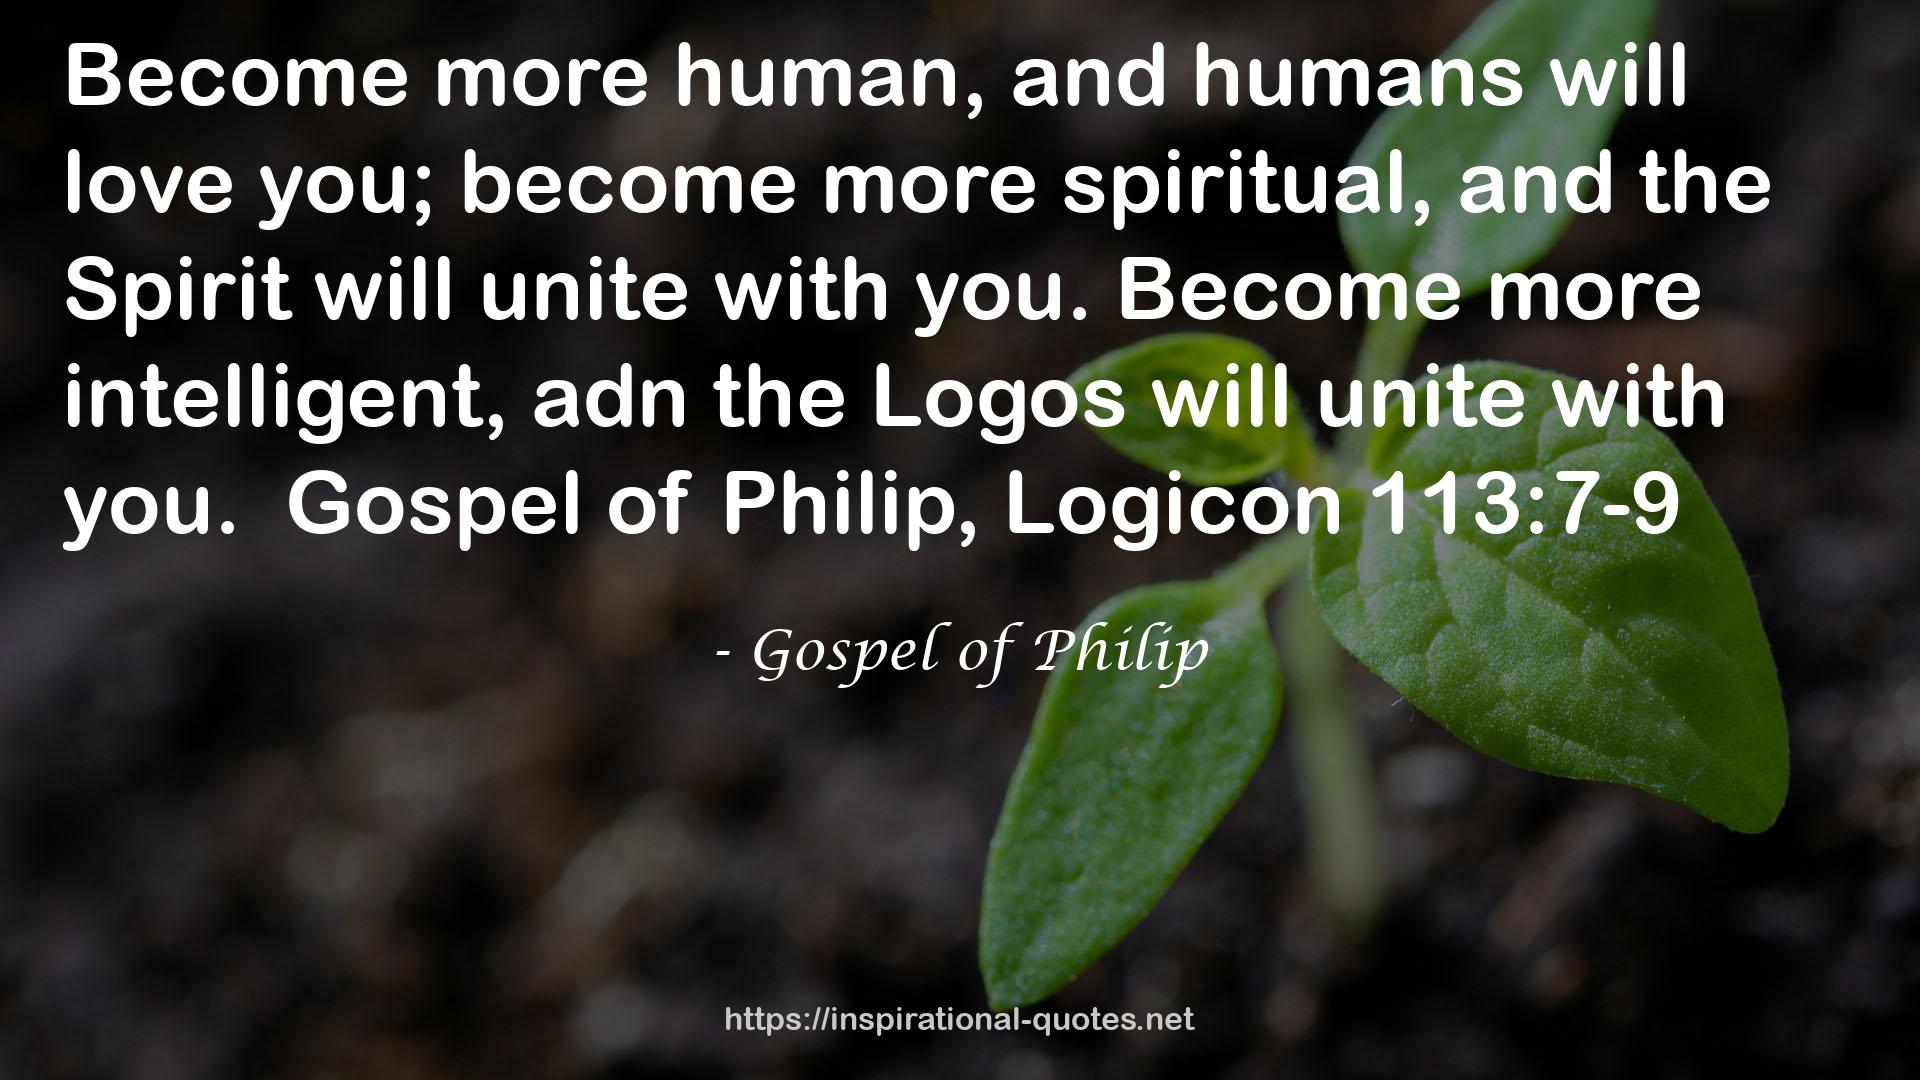 Gospel of Philip QUOTES